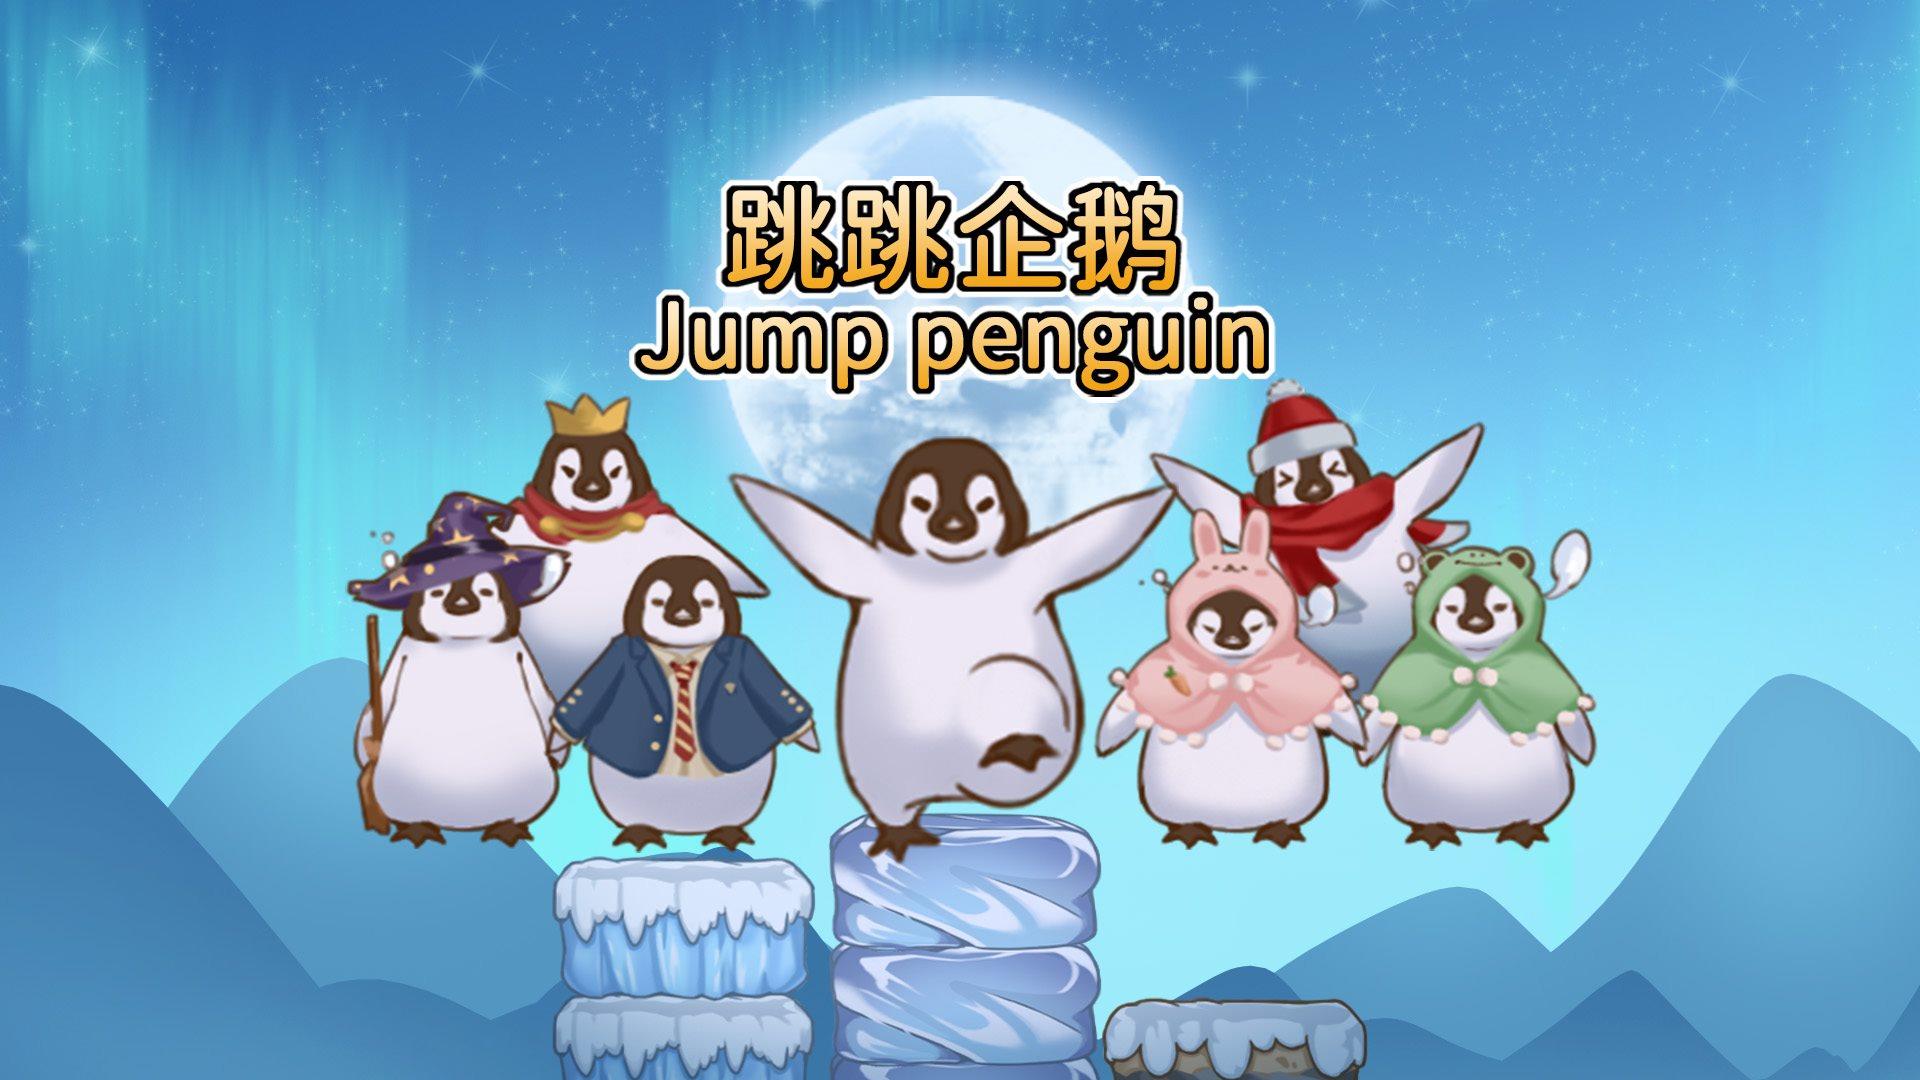 Banner of pinguino che rimbalza 0.1.2021.0108.3